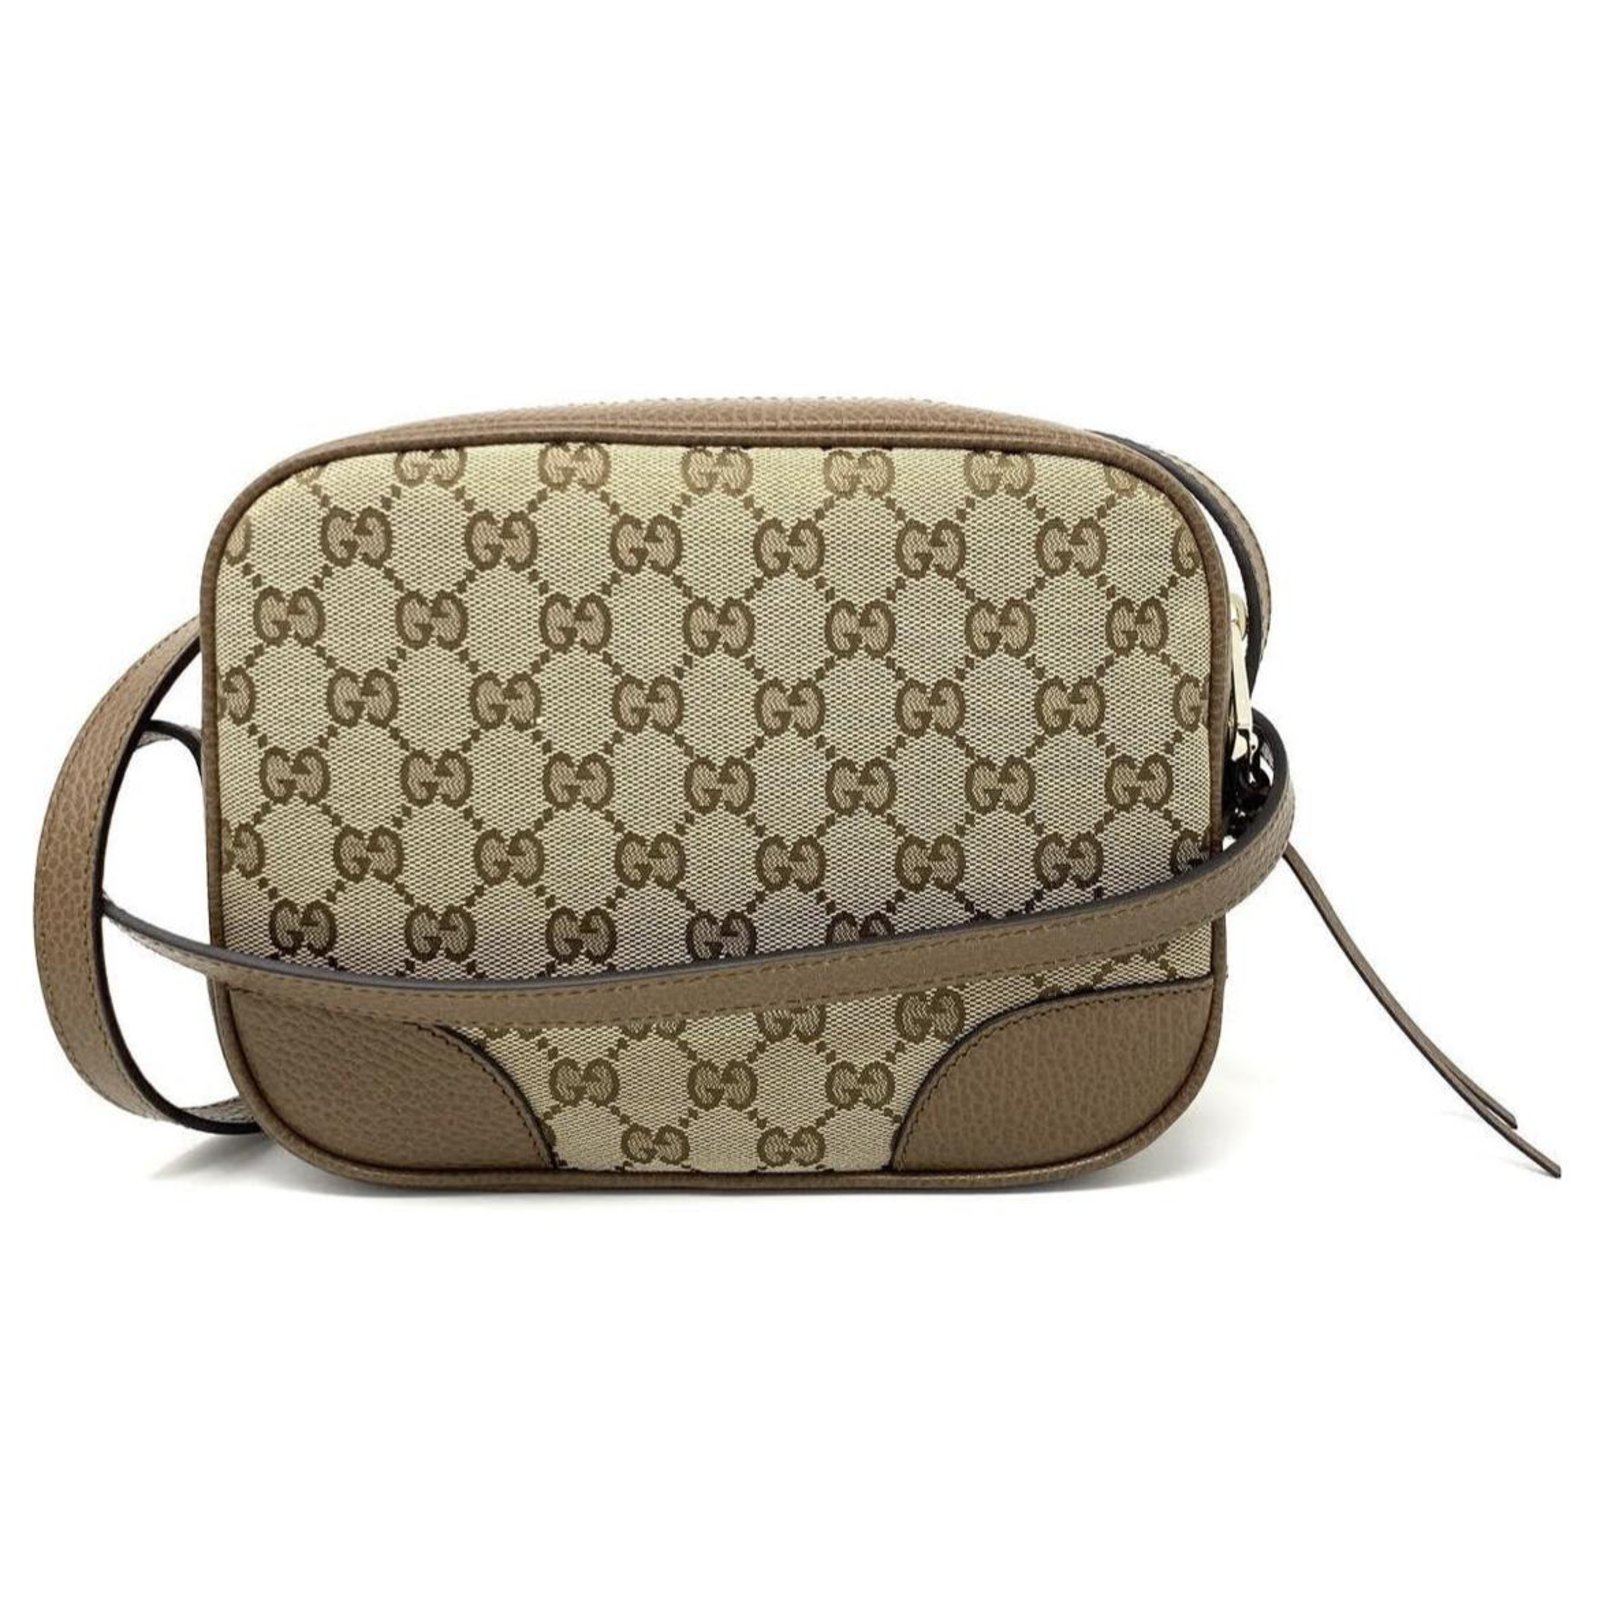 Gucci Gucci bree messenger new Handbags 